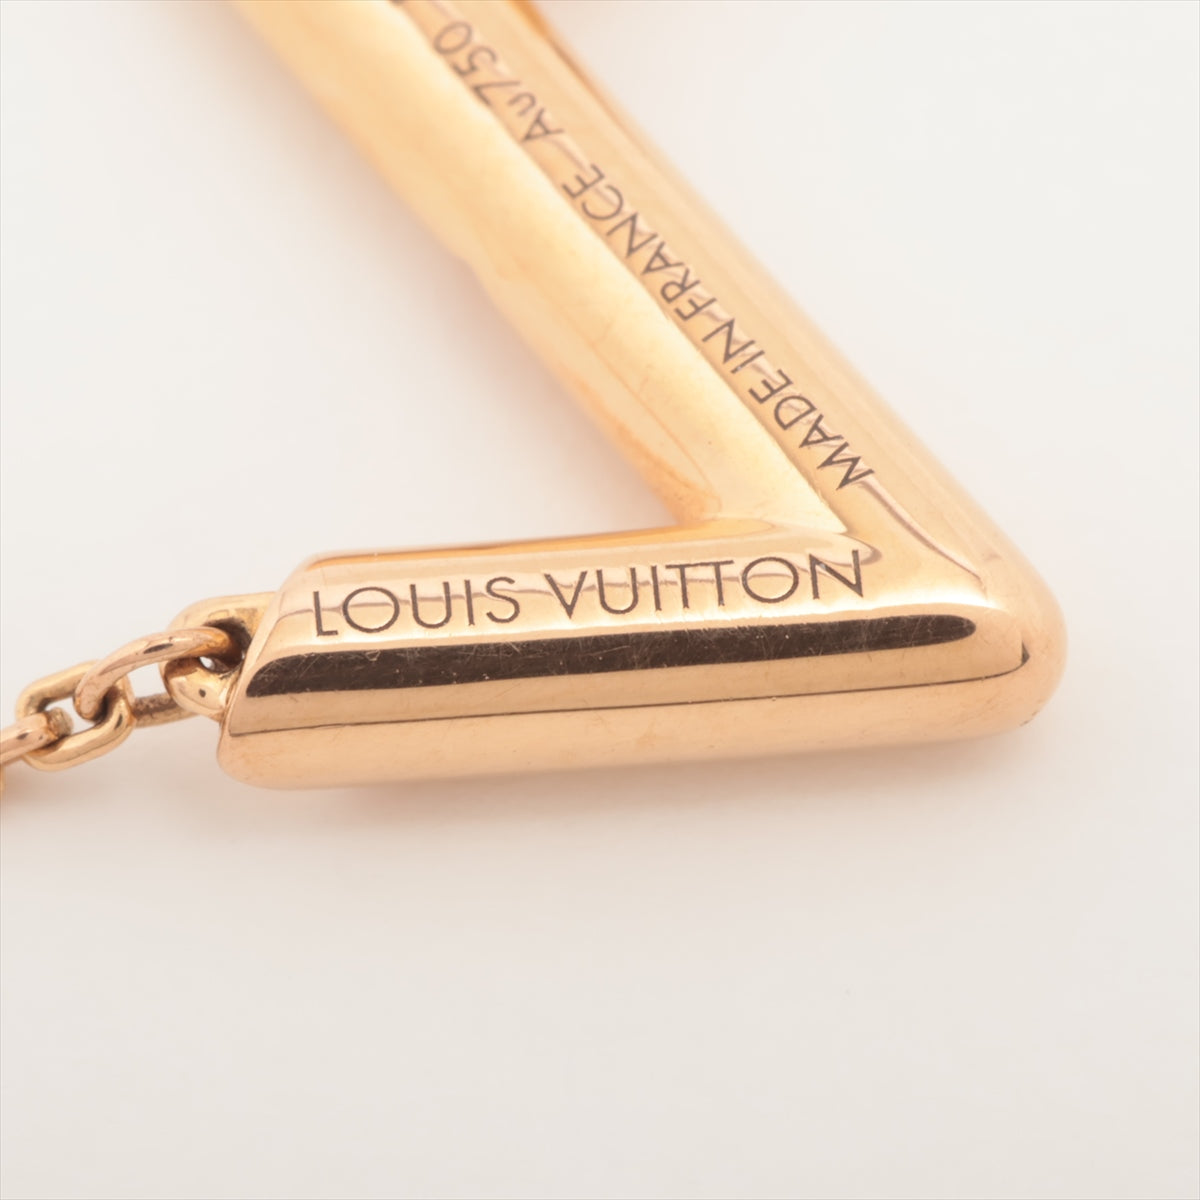 Louis Vuitton LV Vault Upside Down Necklace 750(PG) 6.0g